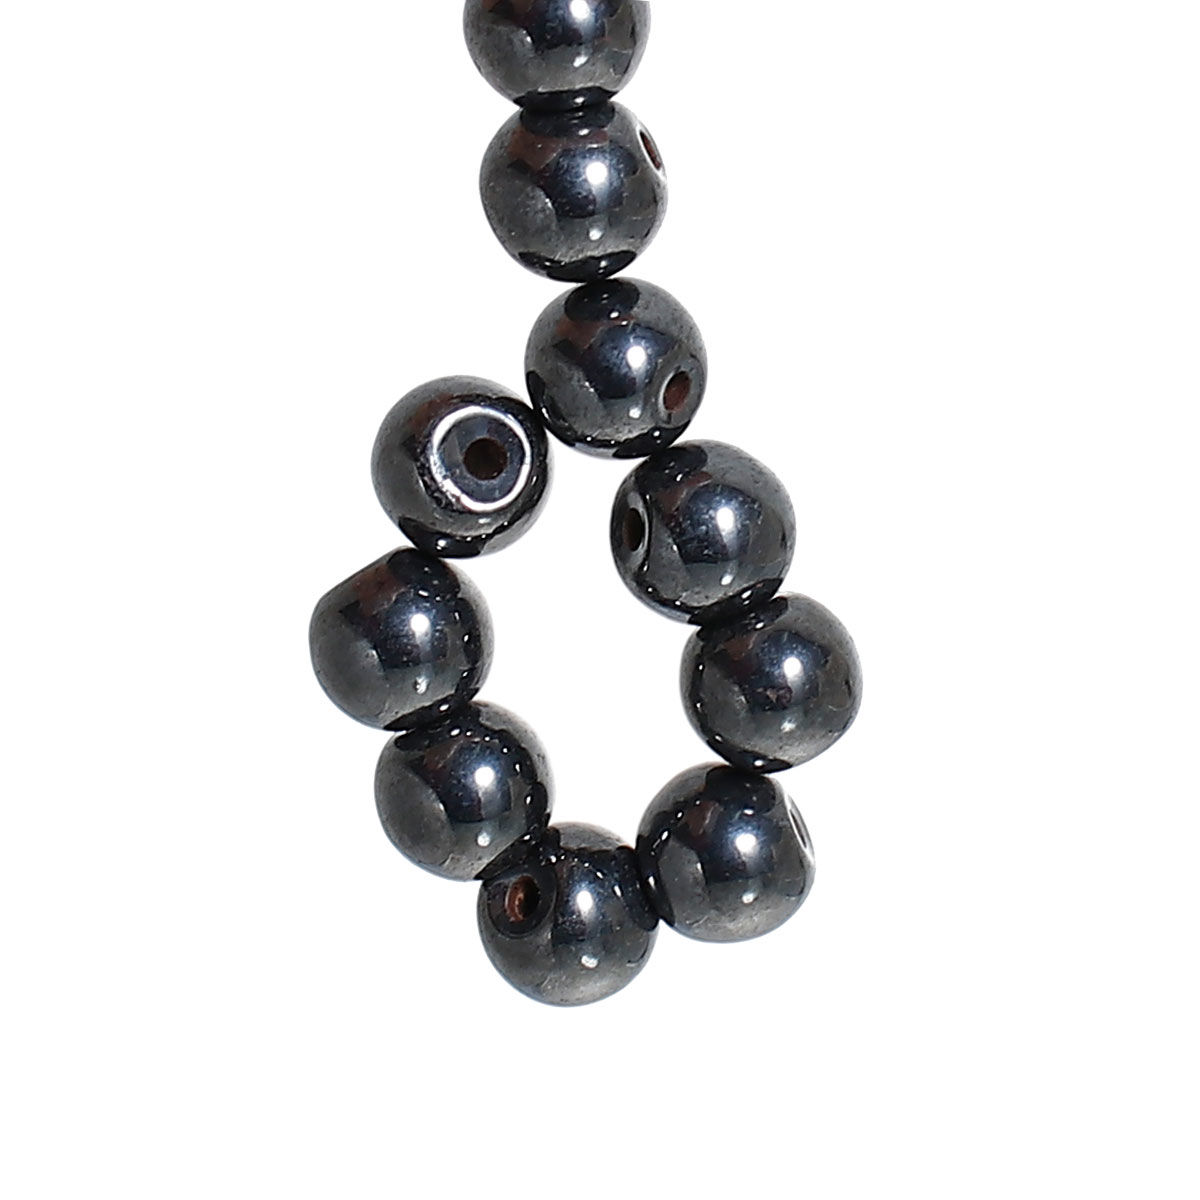 Bild von Rund Magnet Hämatit Spacer  Perlen Beads 4mm Durchmesser verkauft eine Packung mit 200